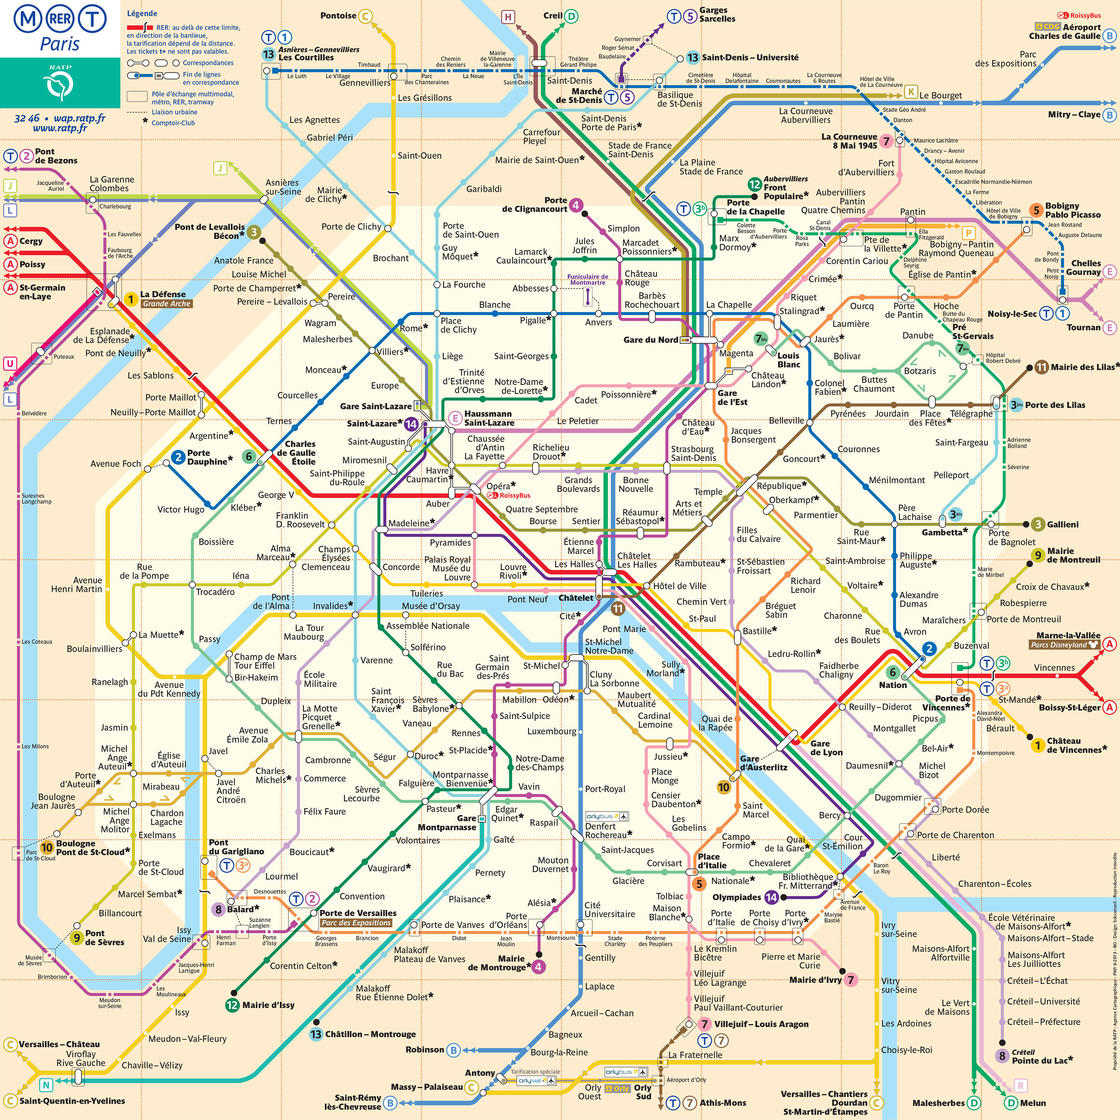 mapa-metro-paris.pjpeg